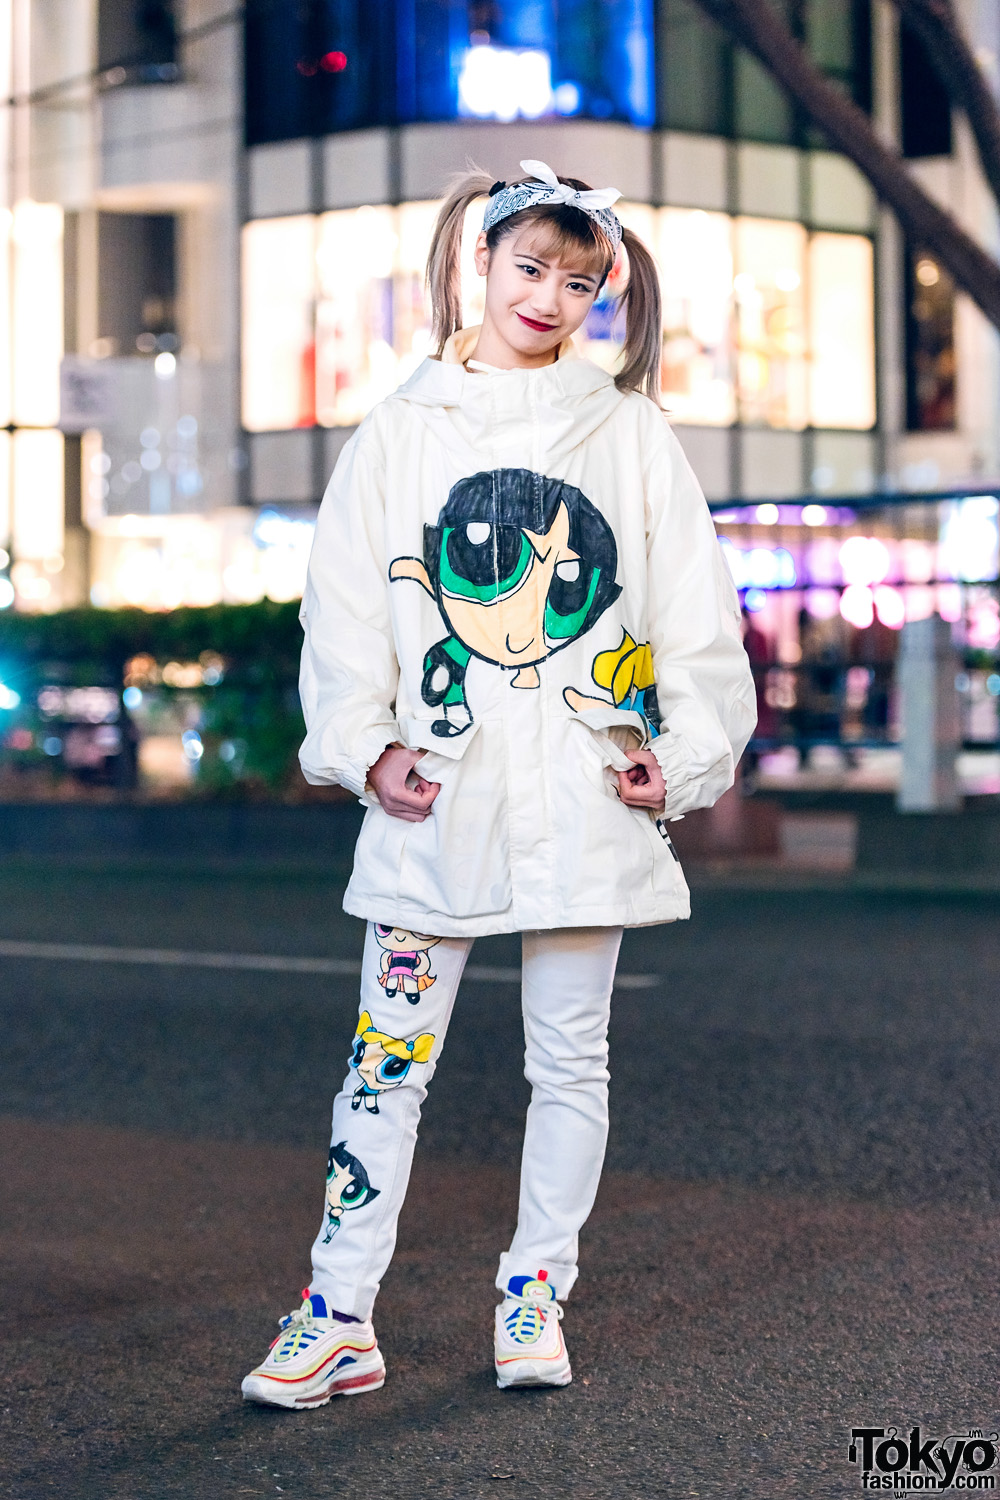 All White Powerpuff Girls Streetwear Style w/ Hair Bandana, Parka Jacket, Skinny Jeans & Nike Sneakers